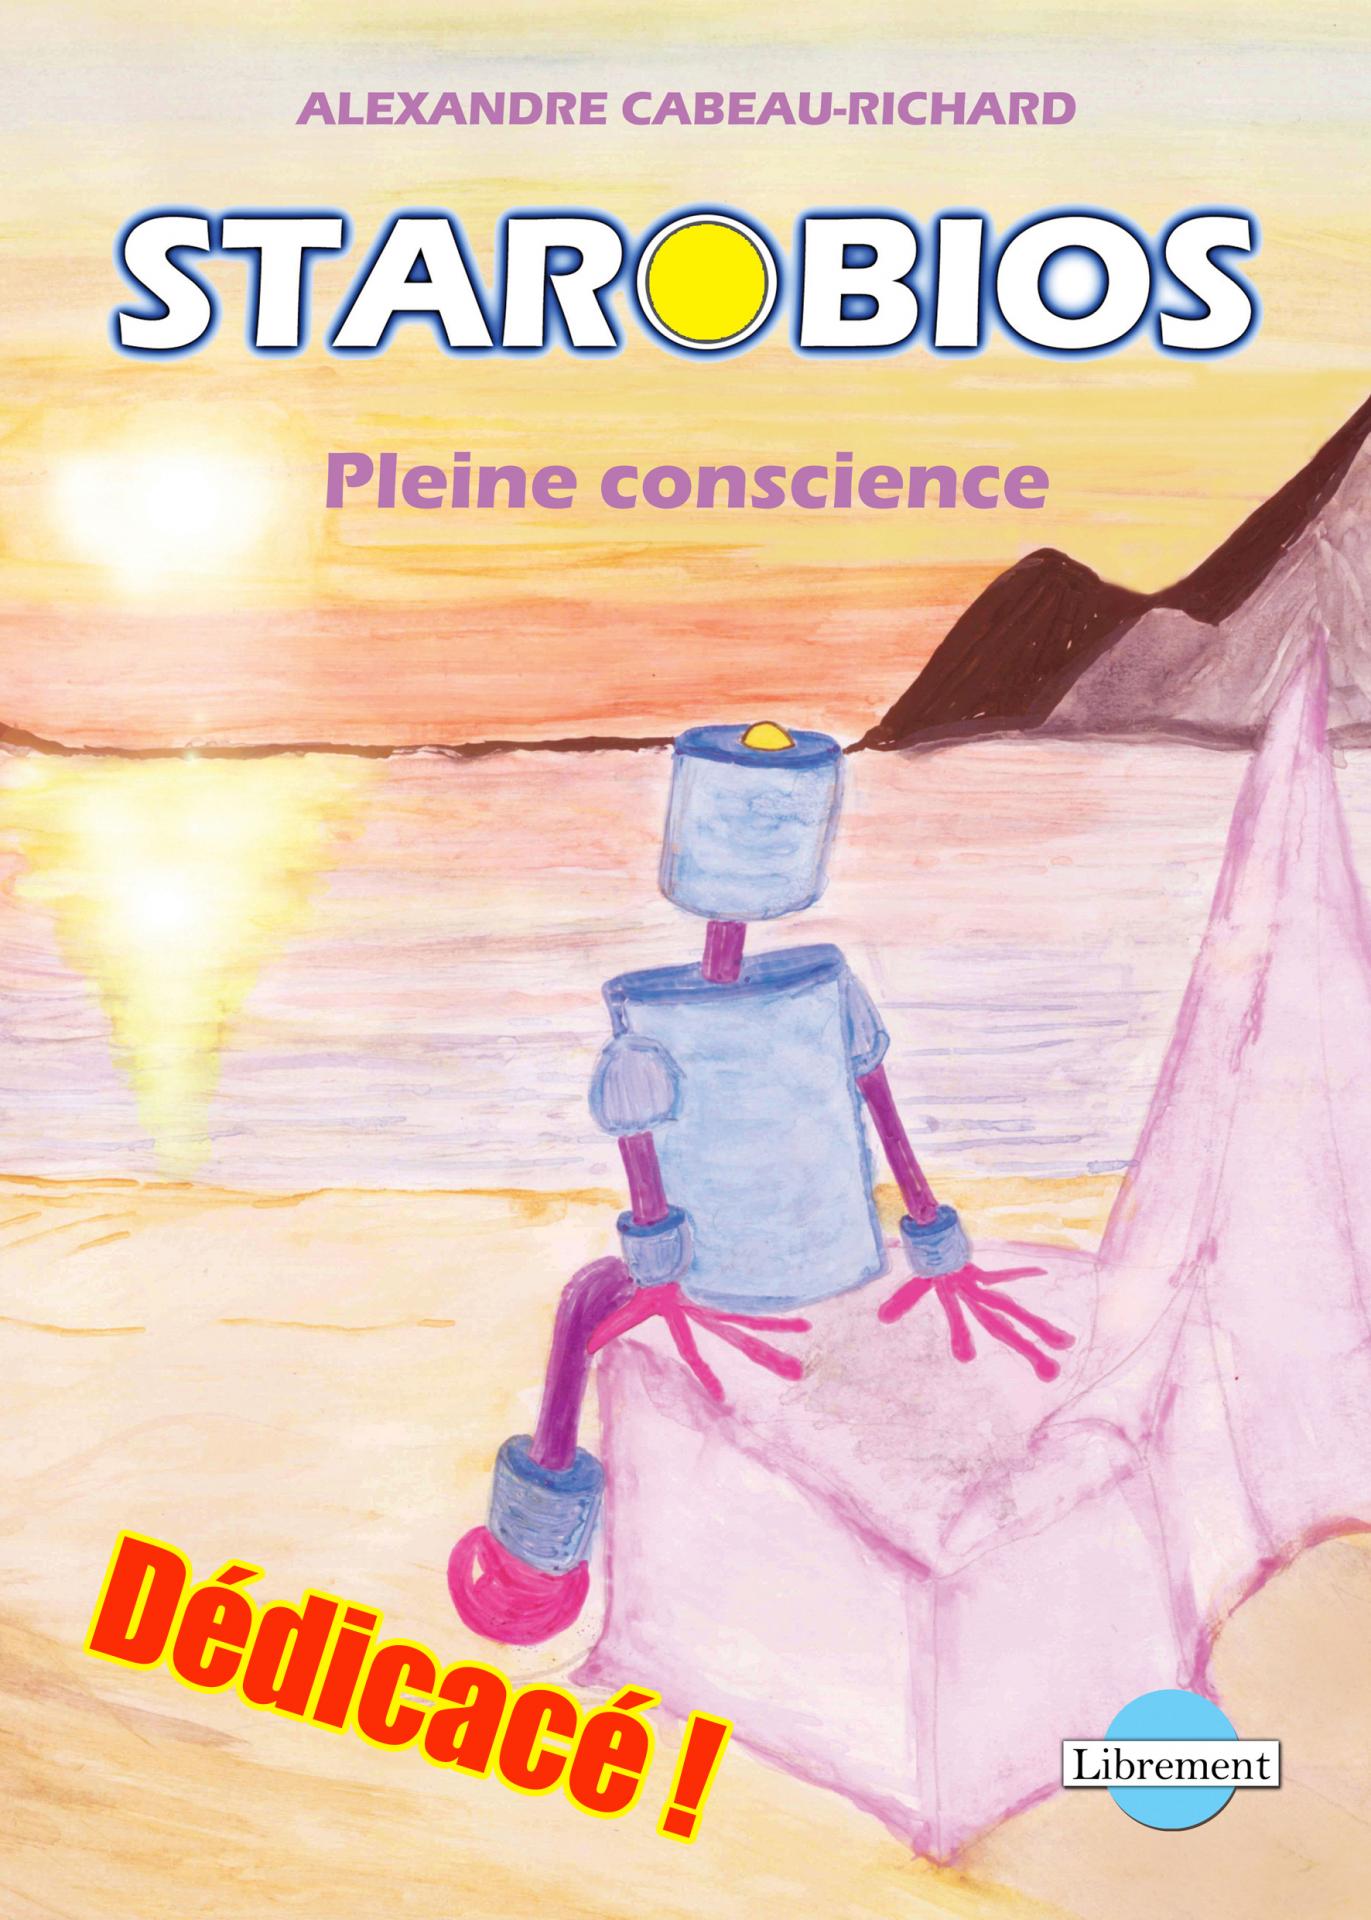 1ere de couverture starobios dedicace 1